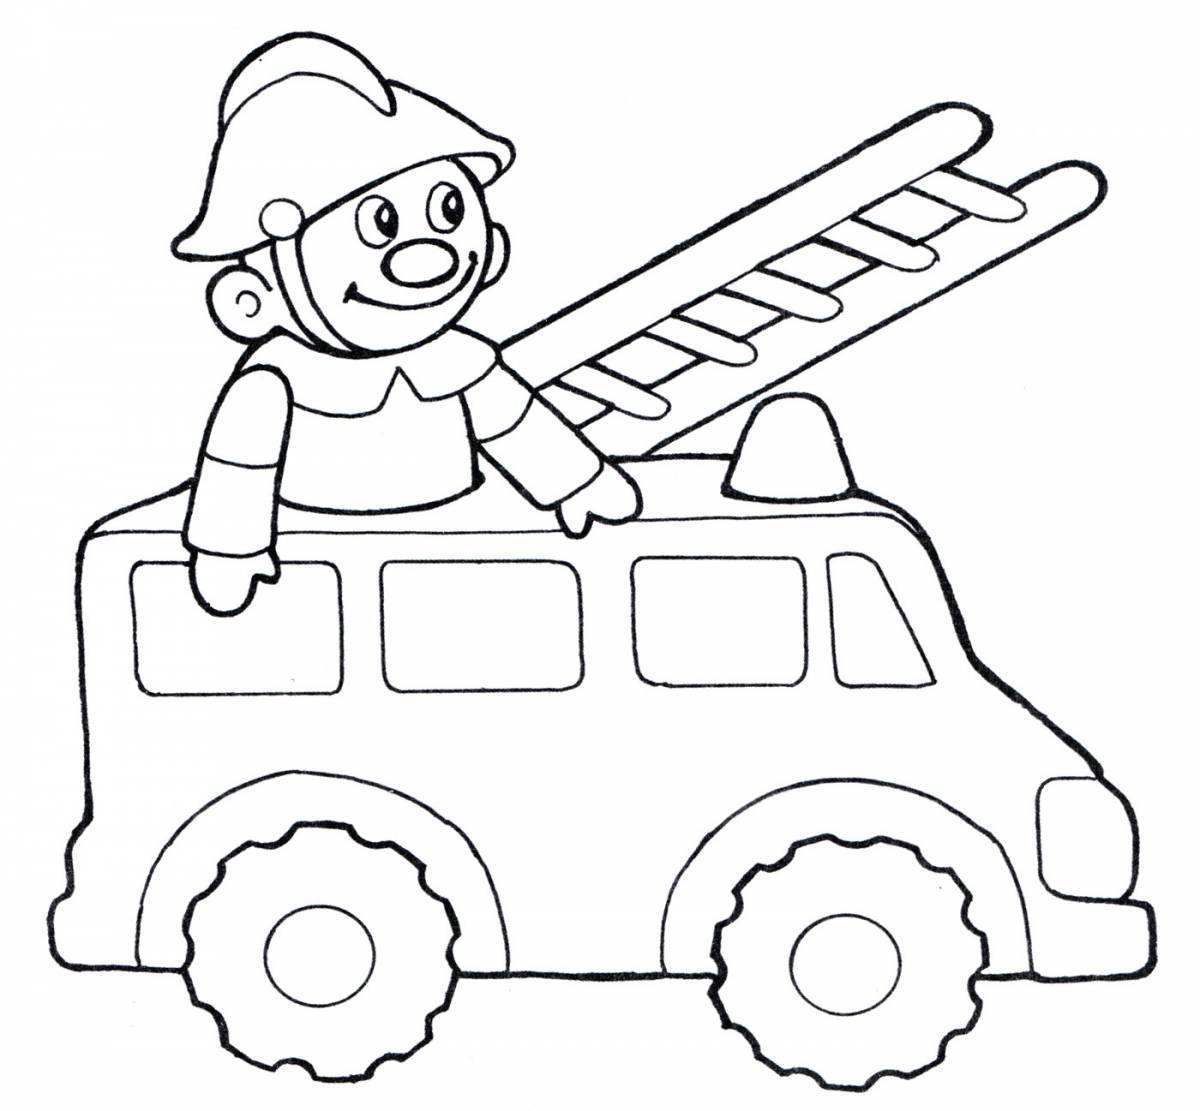 Выдающаяся страница раскраски пожарной машины для детей